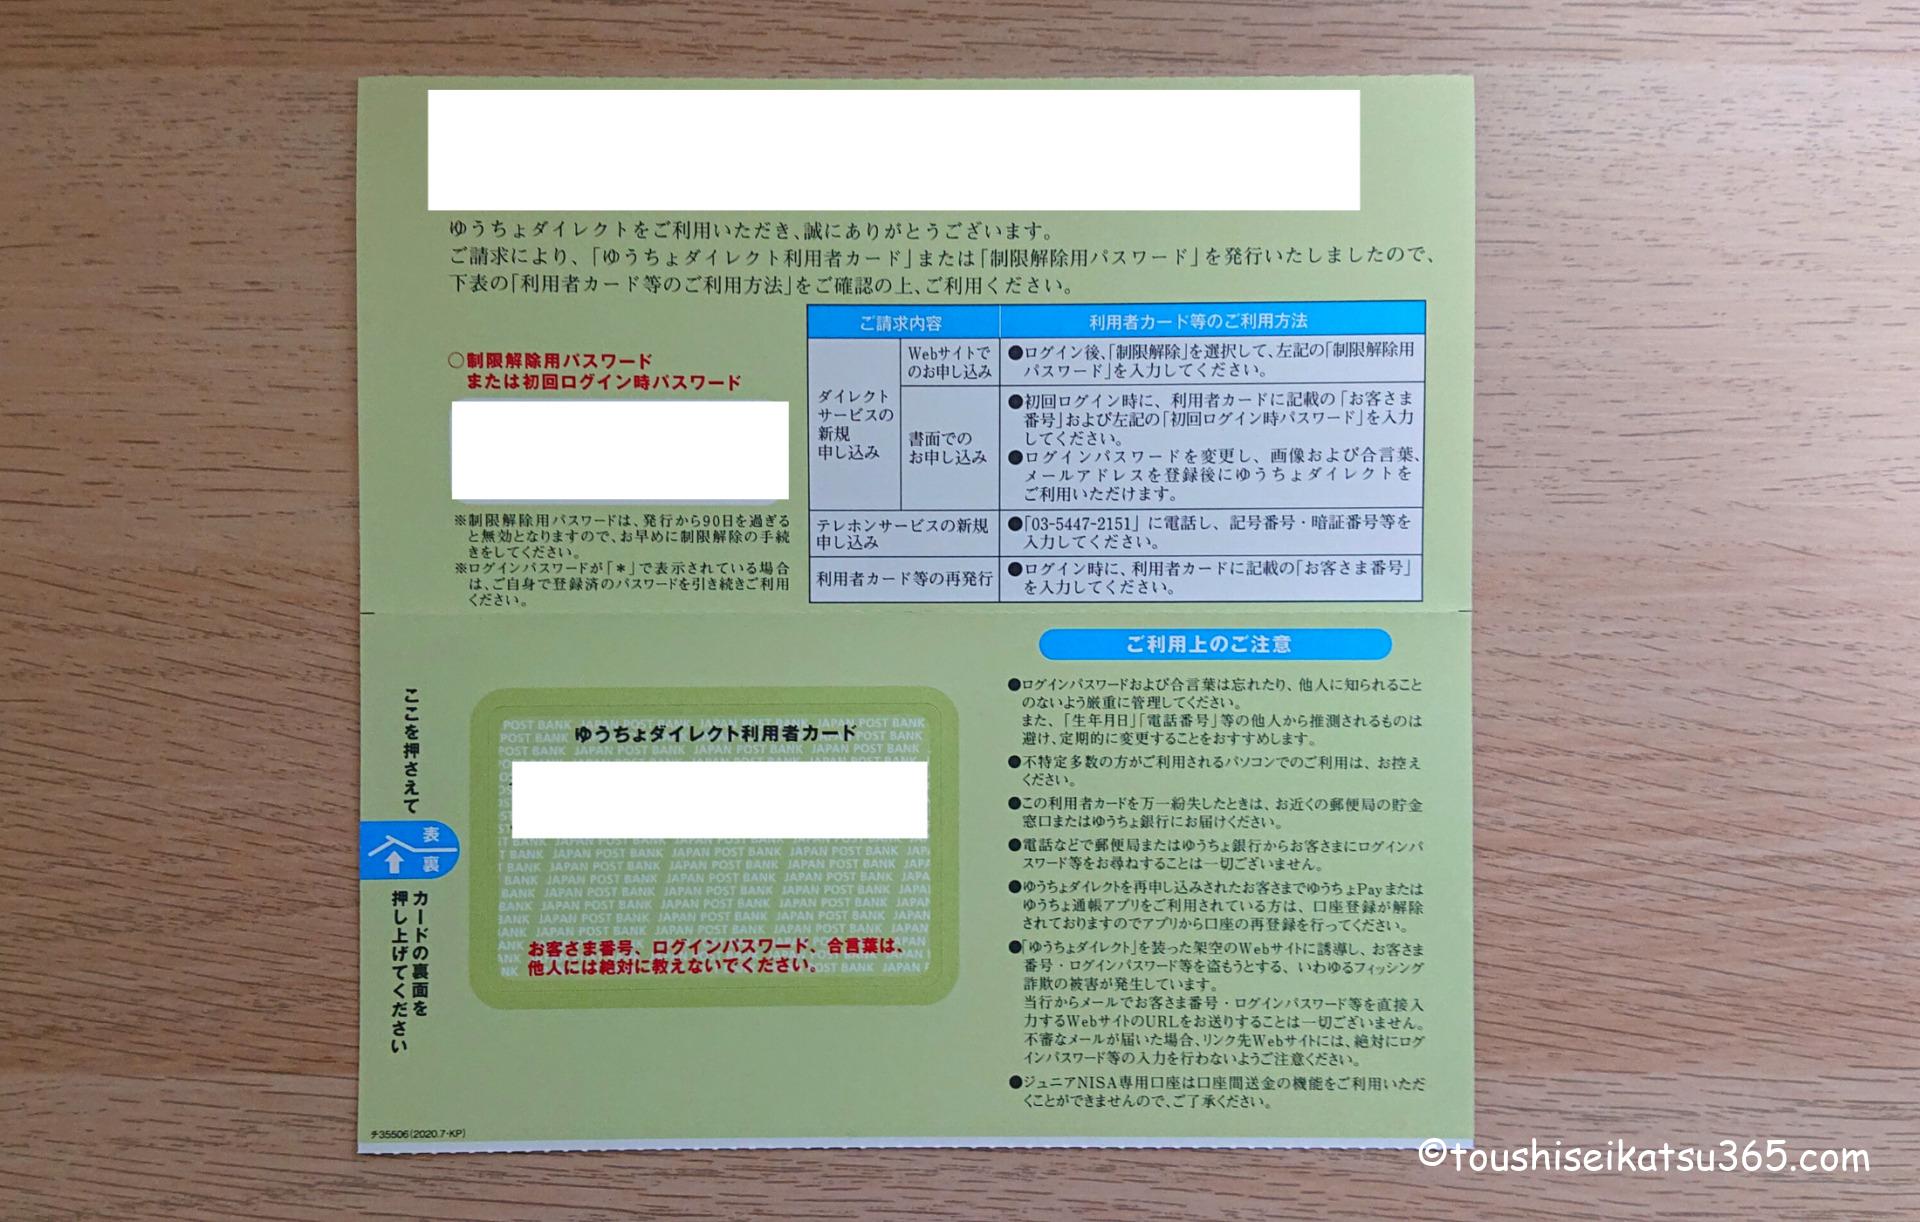 ゆうちょダイレクト利用者カード